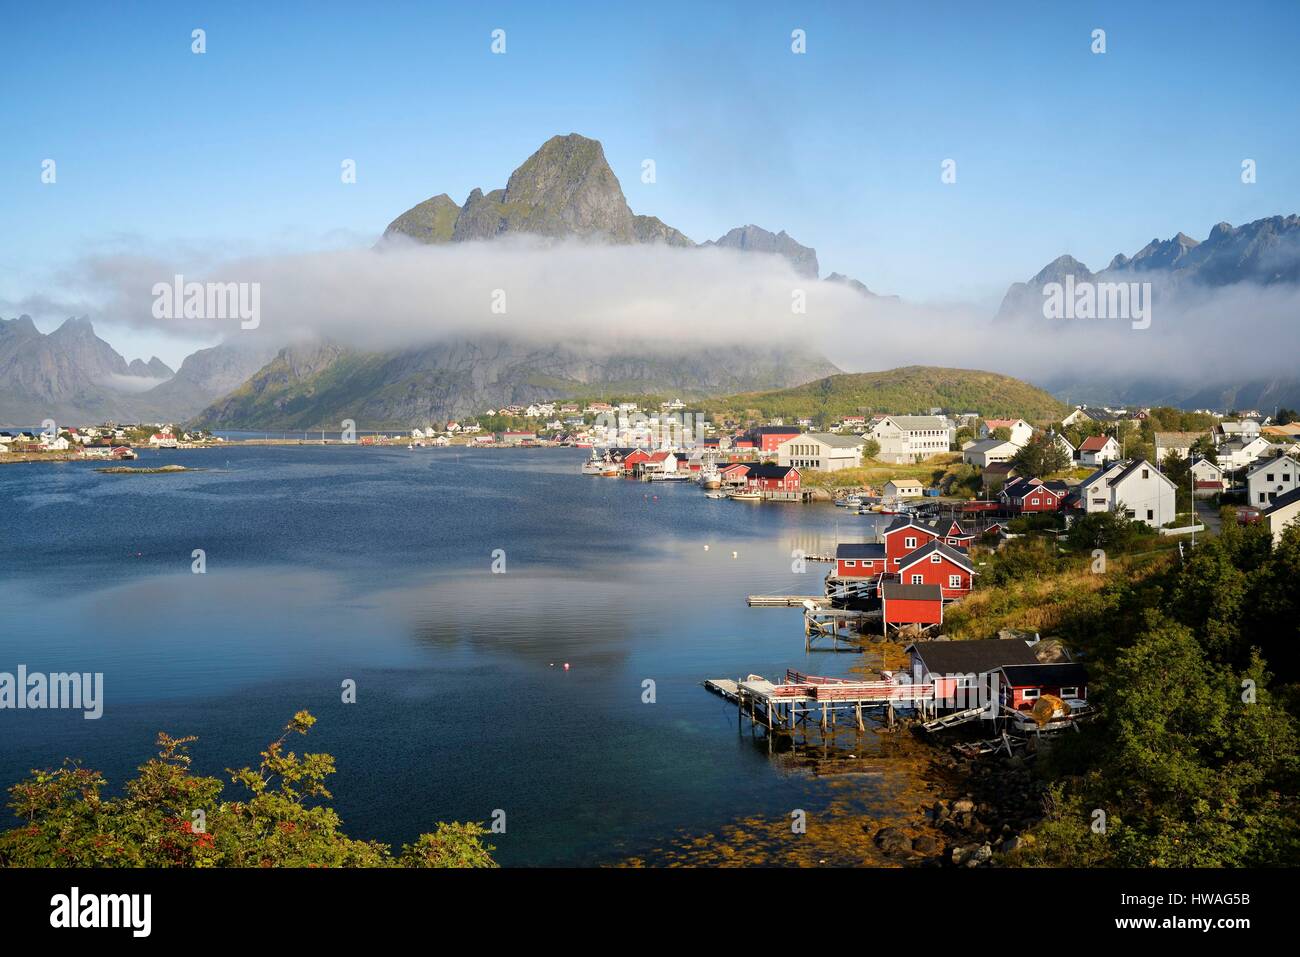 Norvegia, Nordland, isole Lofoten, isola Moskenesoy, il villaggio di pescatori di Reine, pescatori tradizionali cabine costruite su palafitte (rorbu, rorbuer) Foto Stock